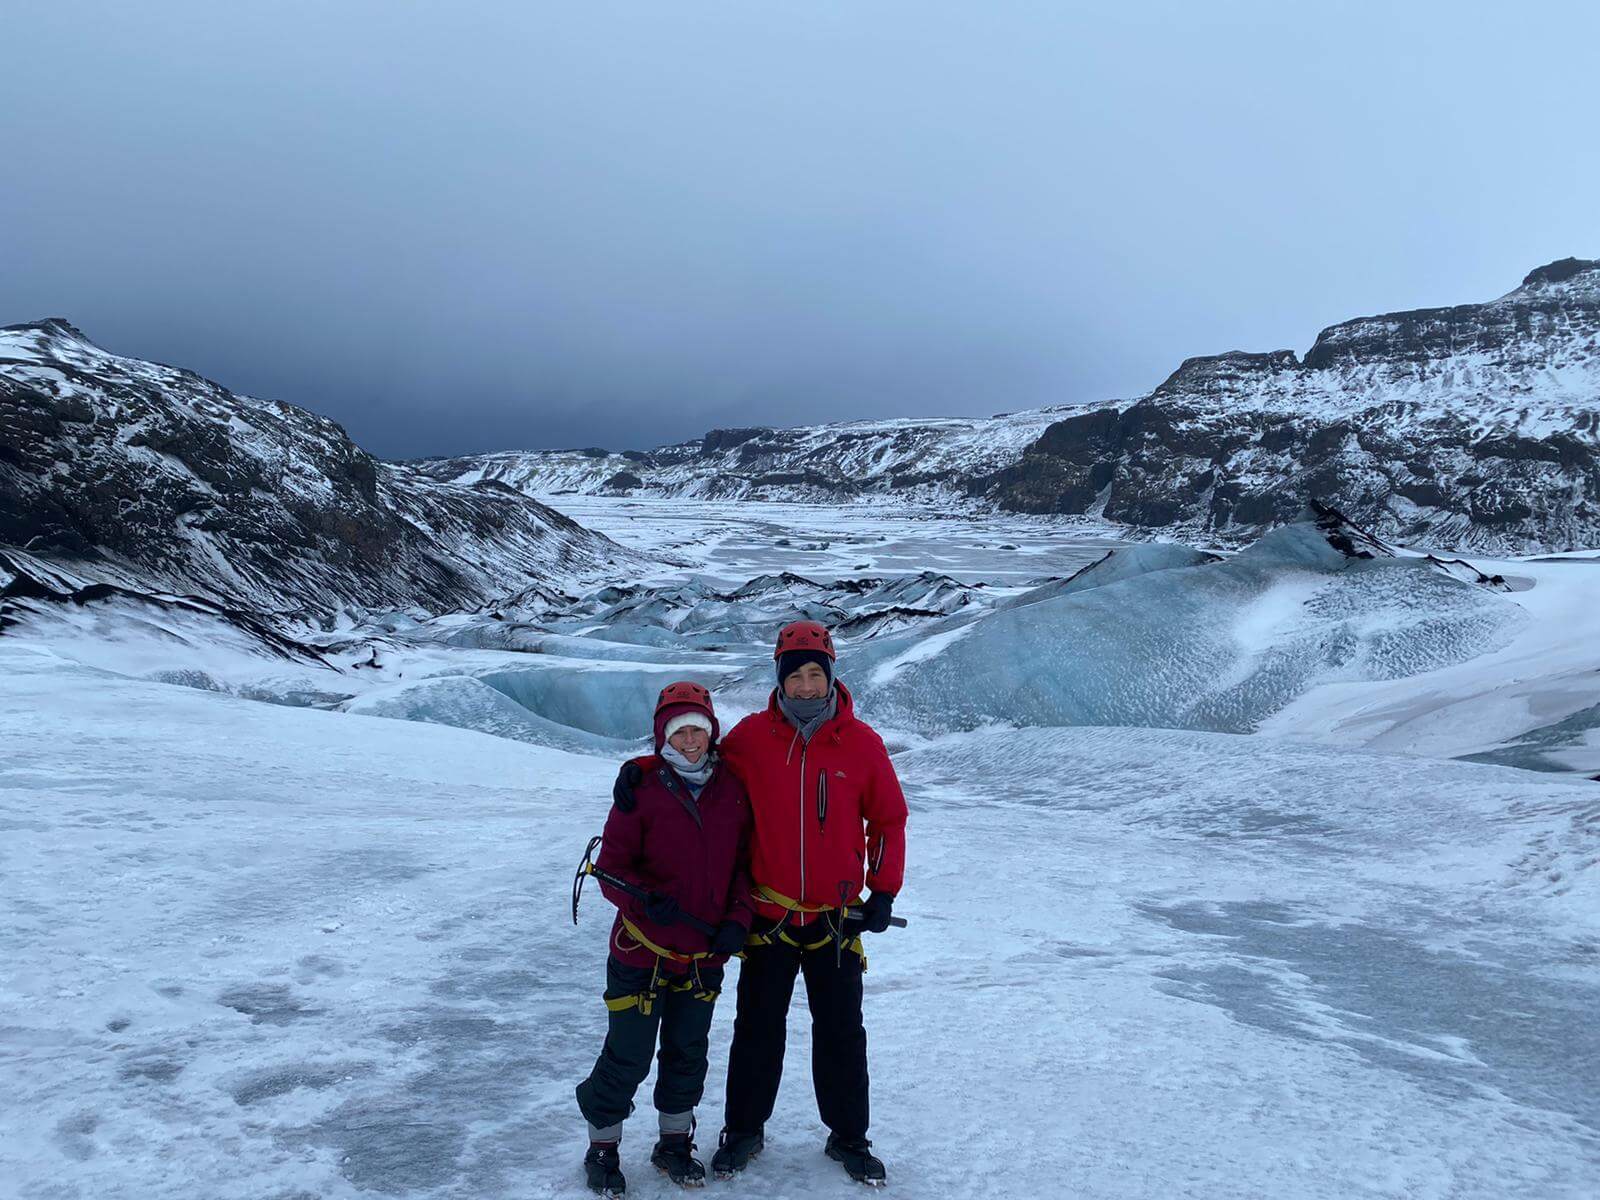 The amazing ice climbing iceland